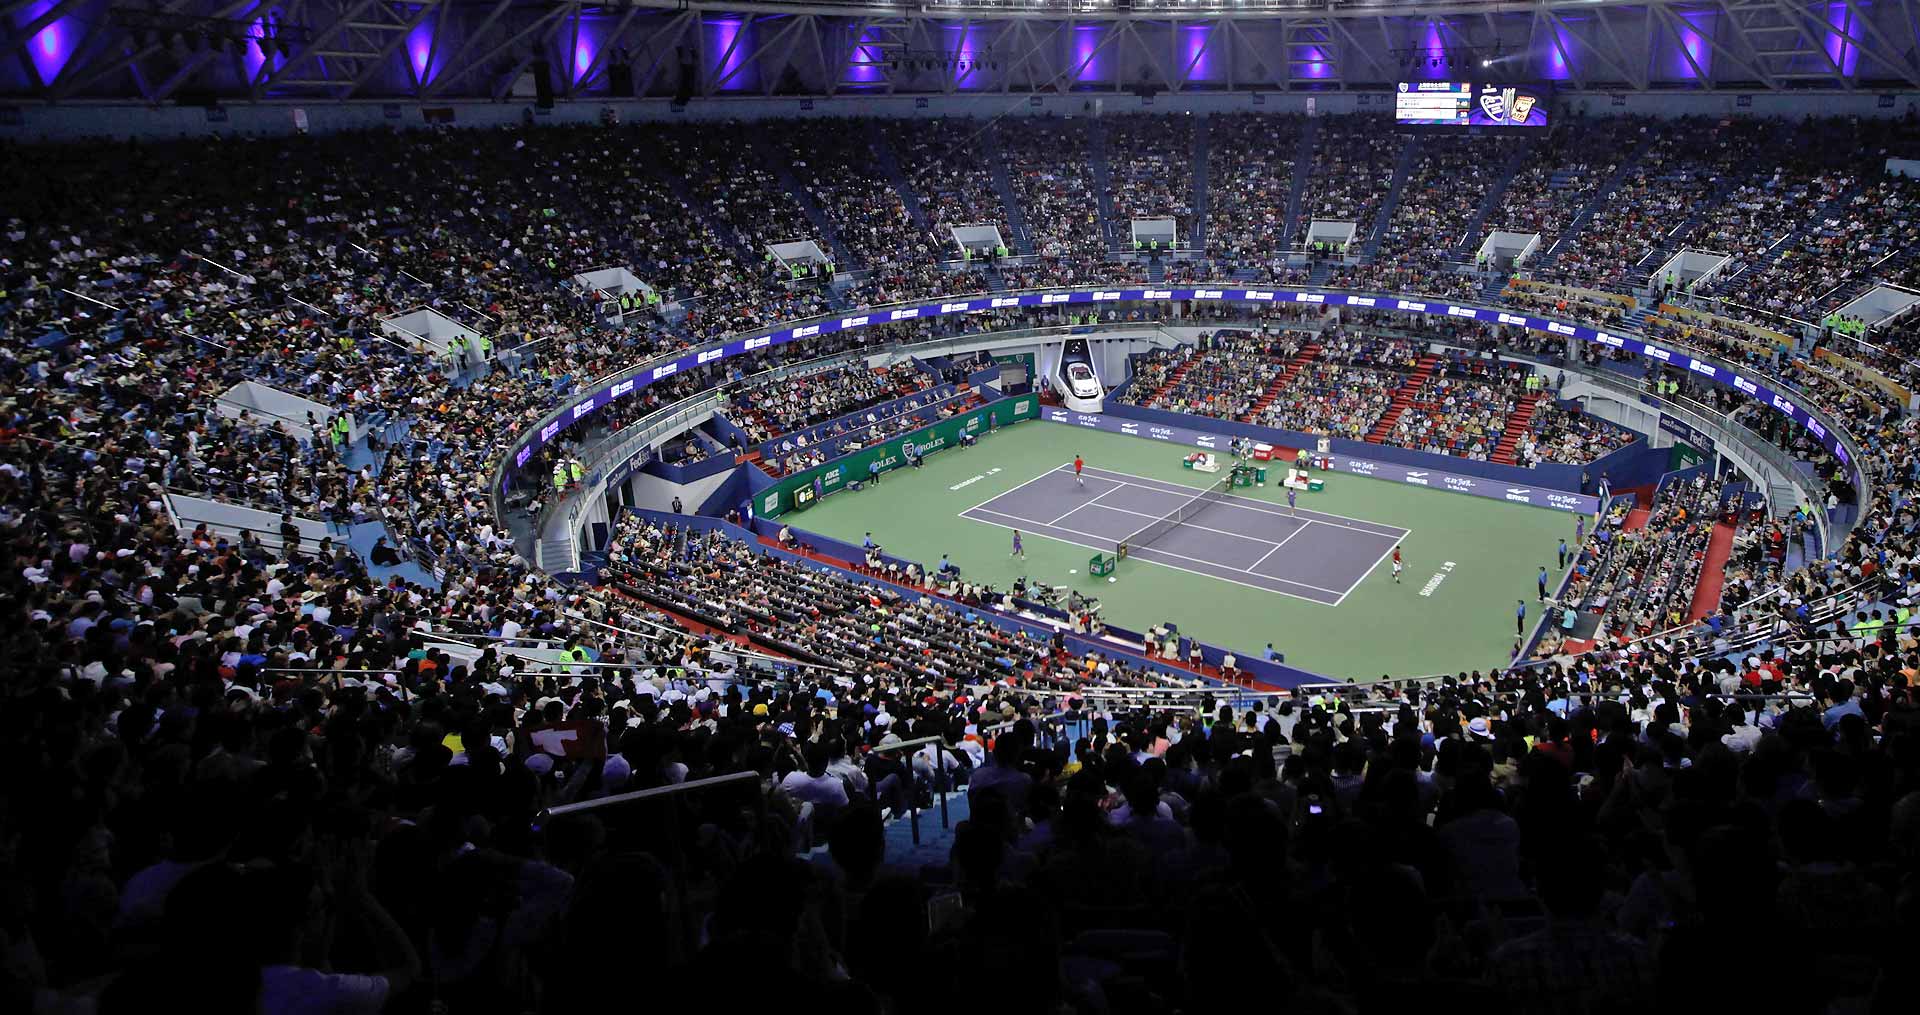 Shanghai Tennis